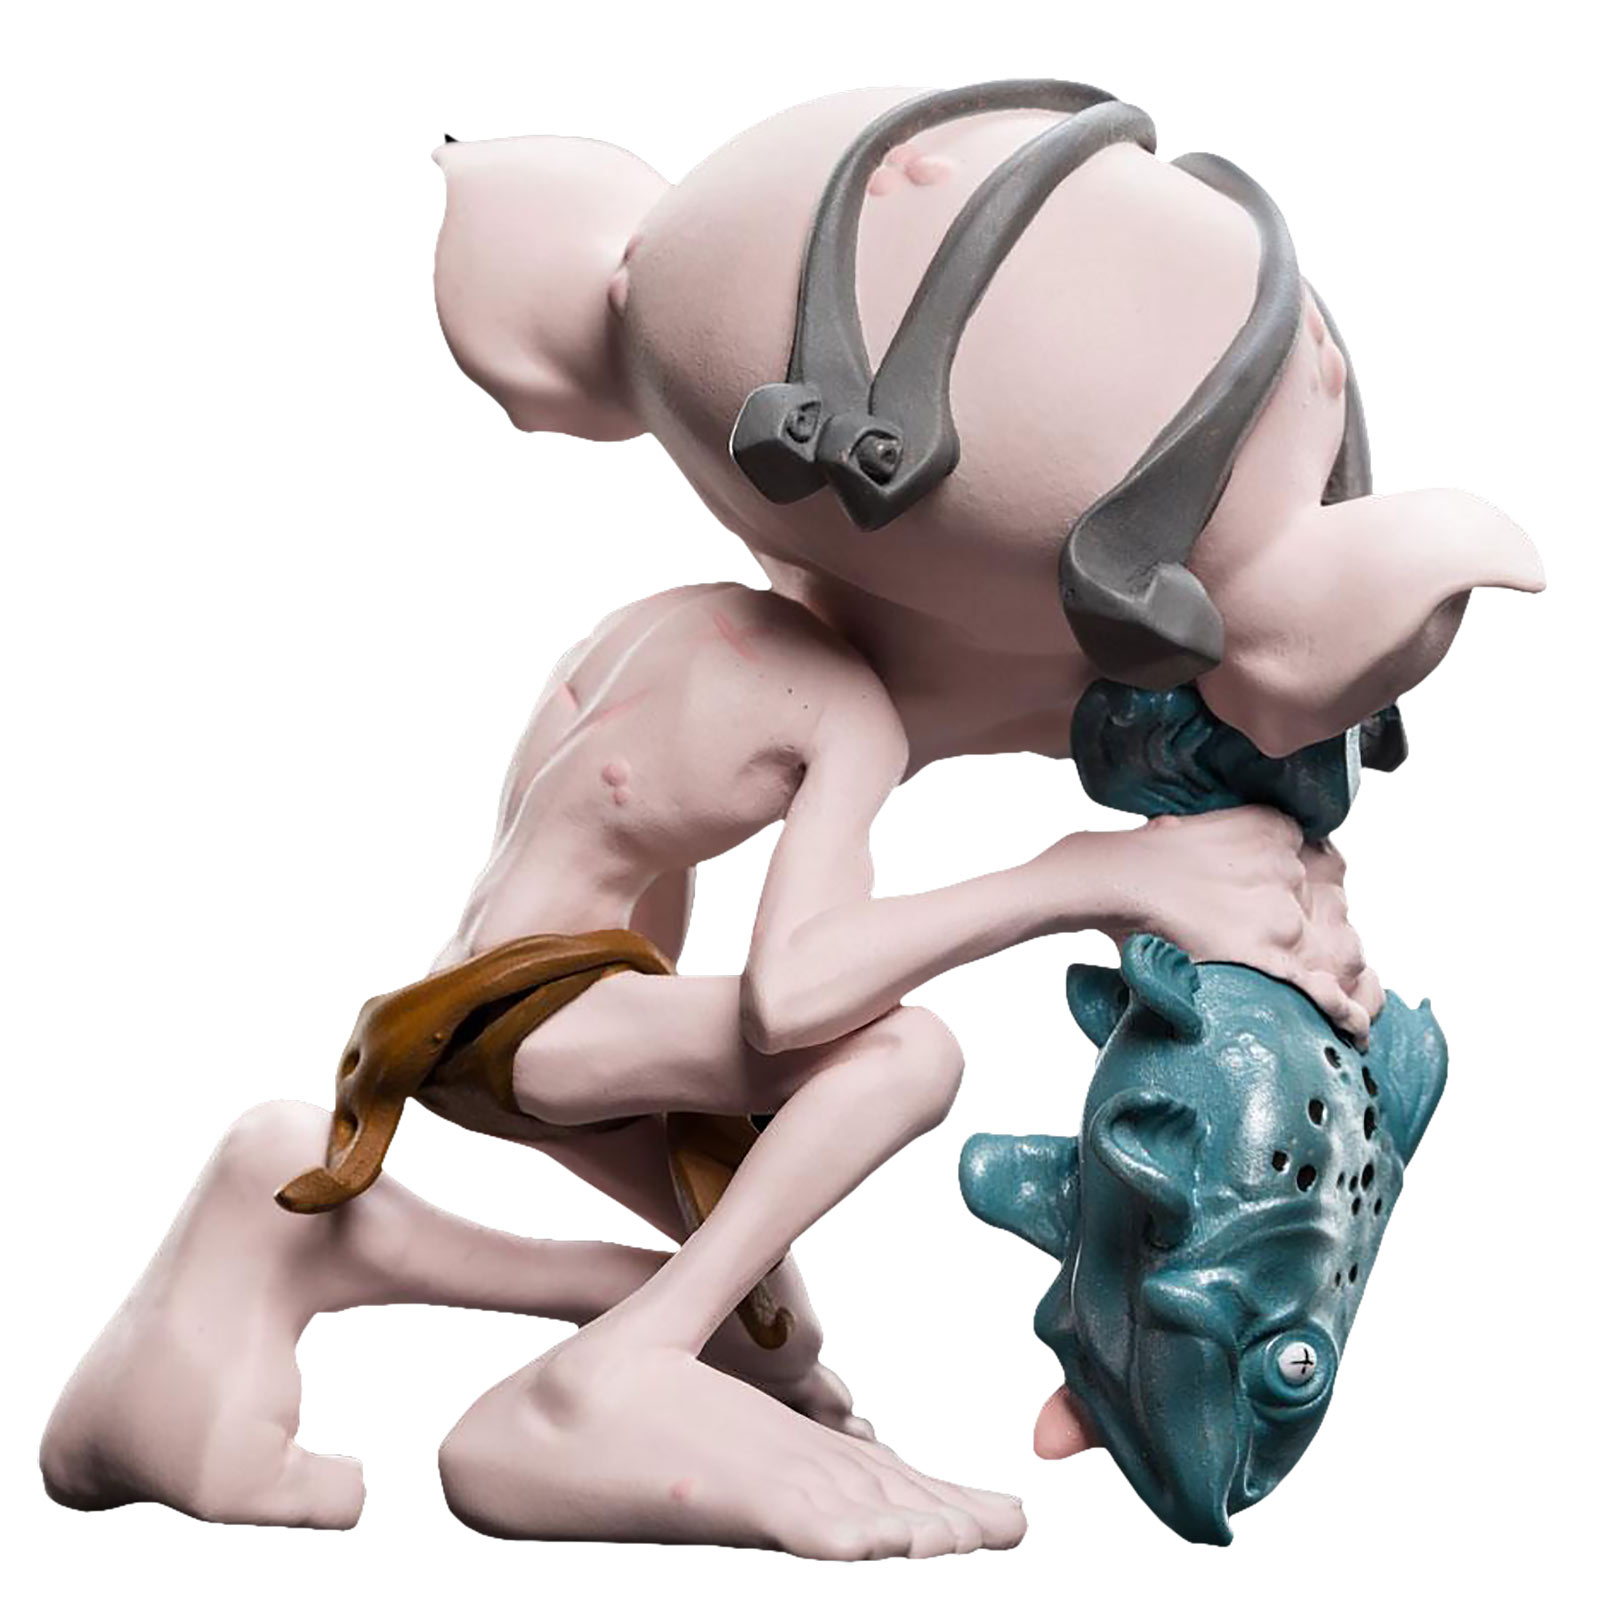 Herr der Ringe - Gollum Mini Epics Figur